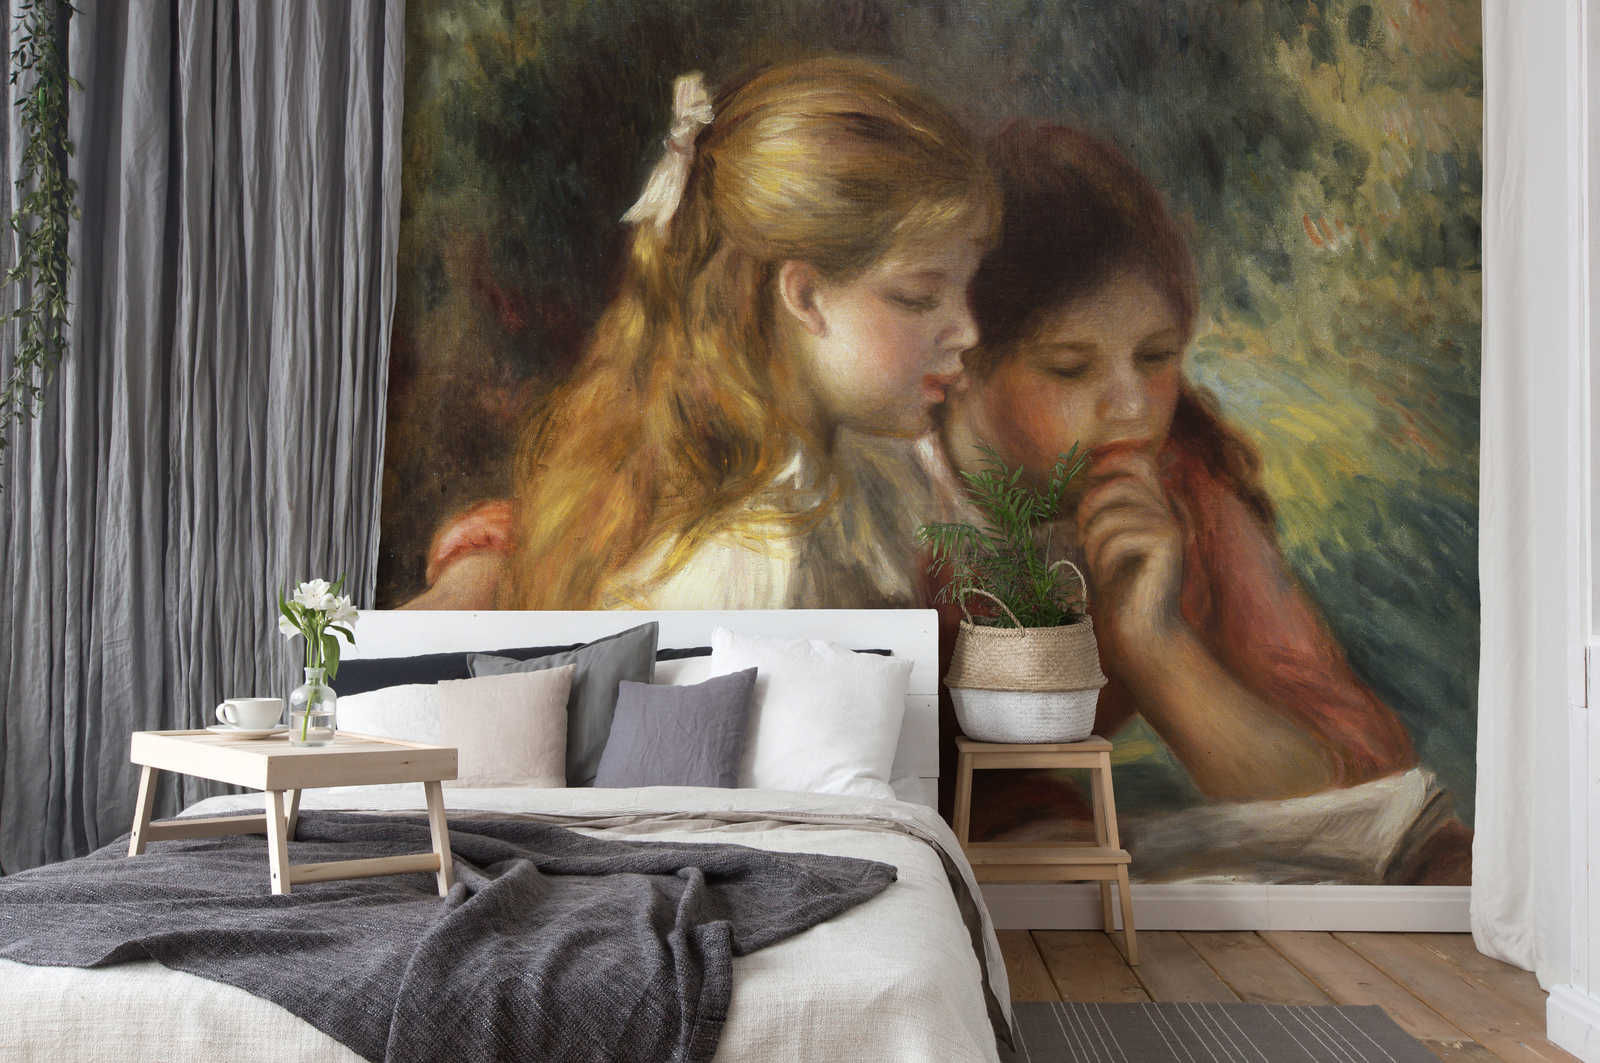             Il murale "La lettura" di Pierre Auguste Renoir
        